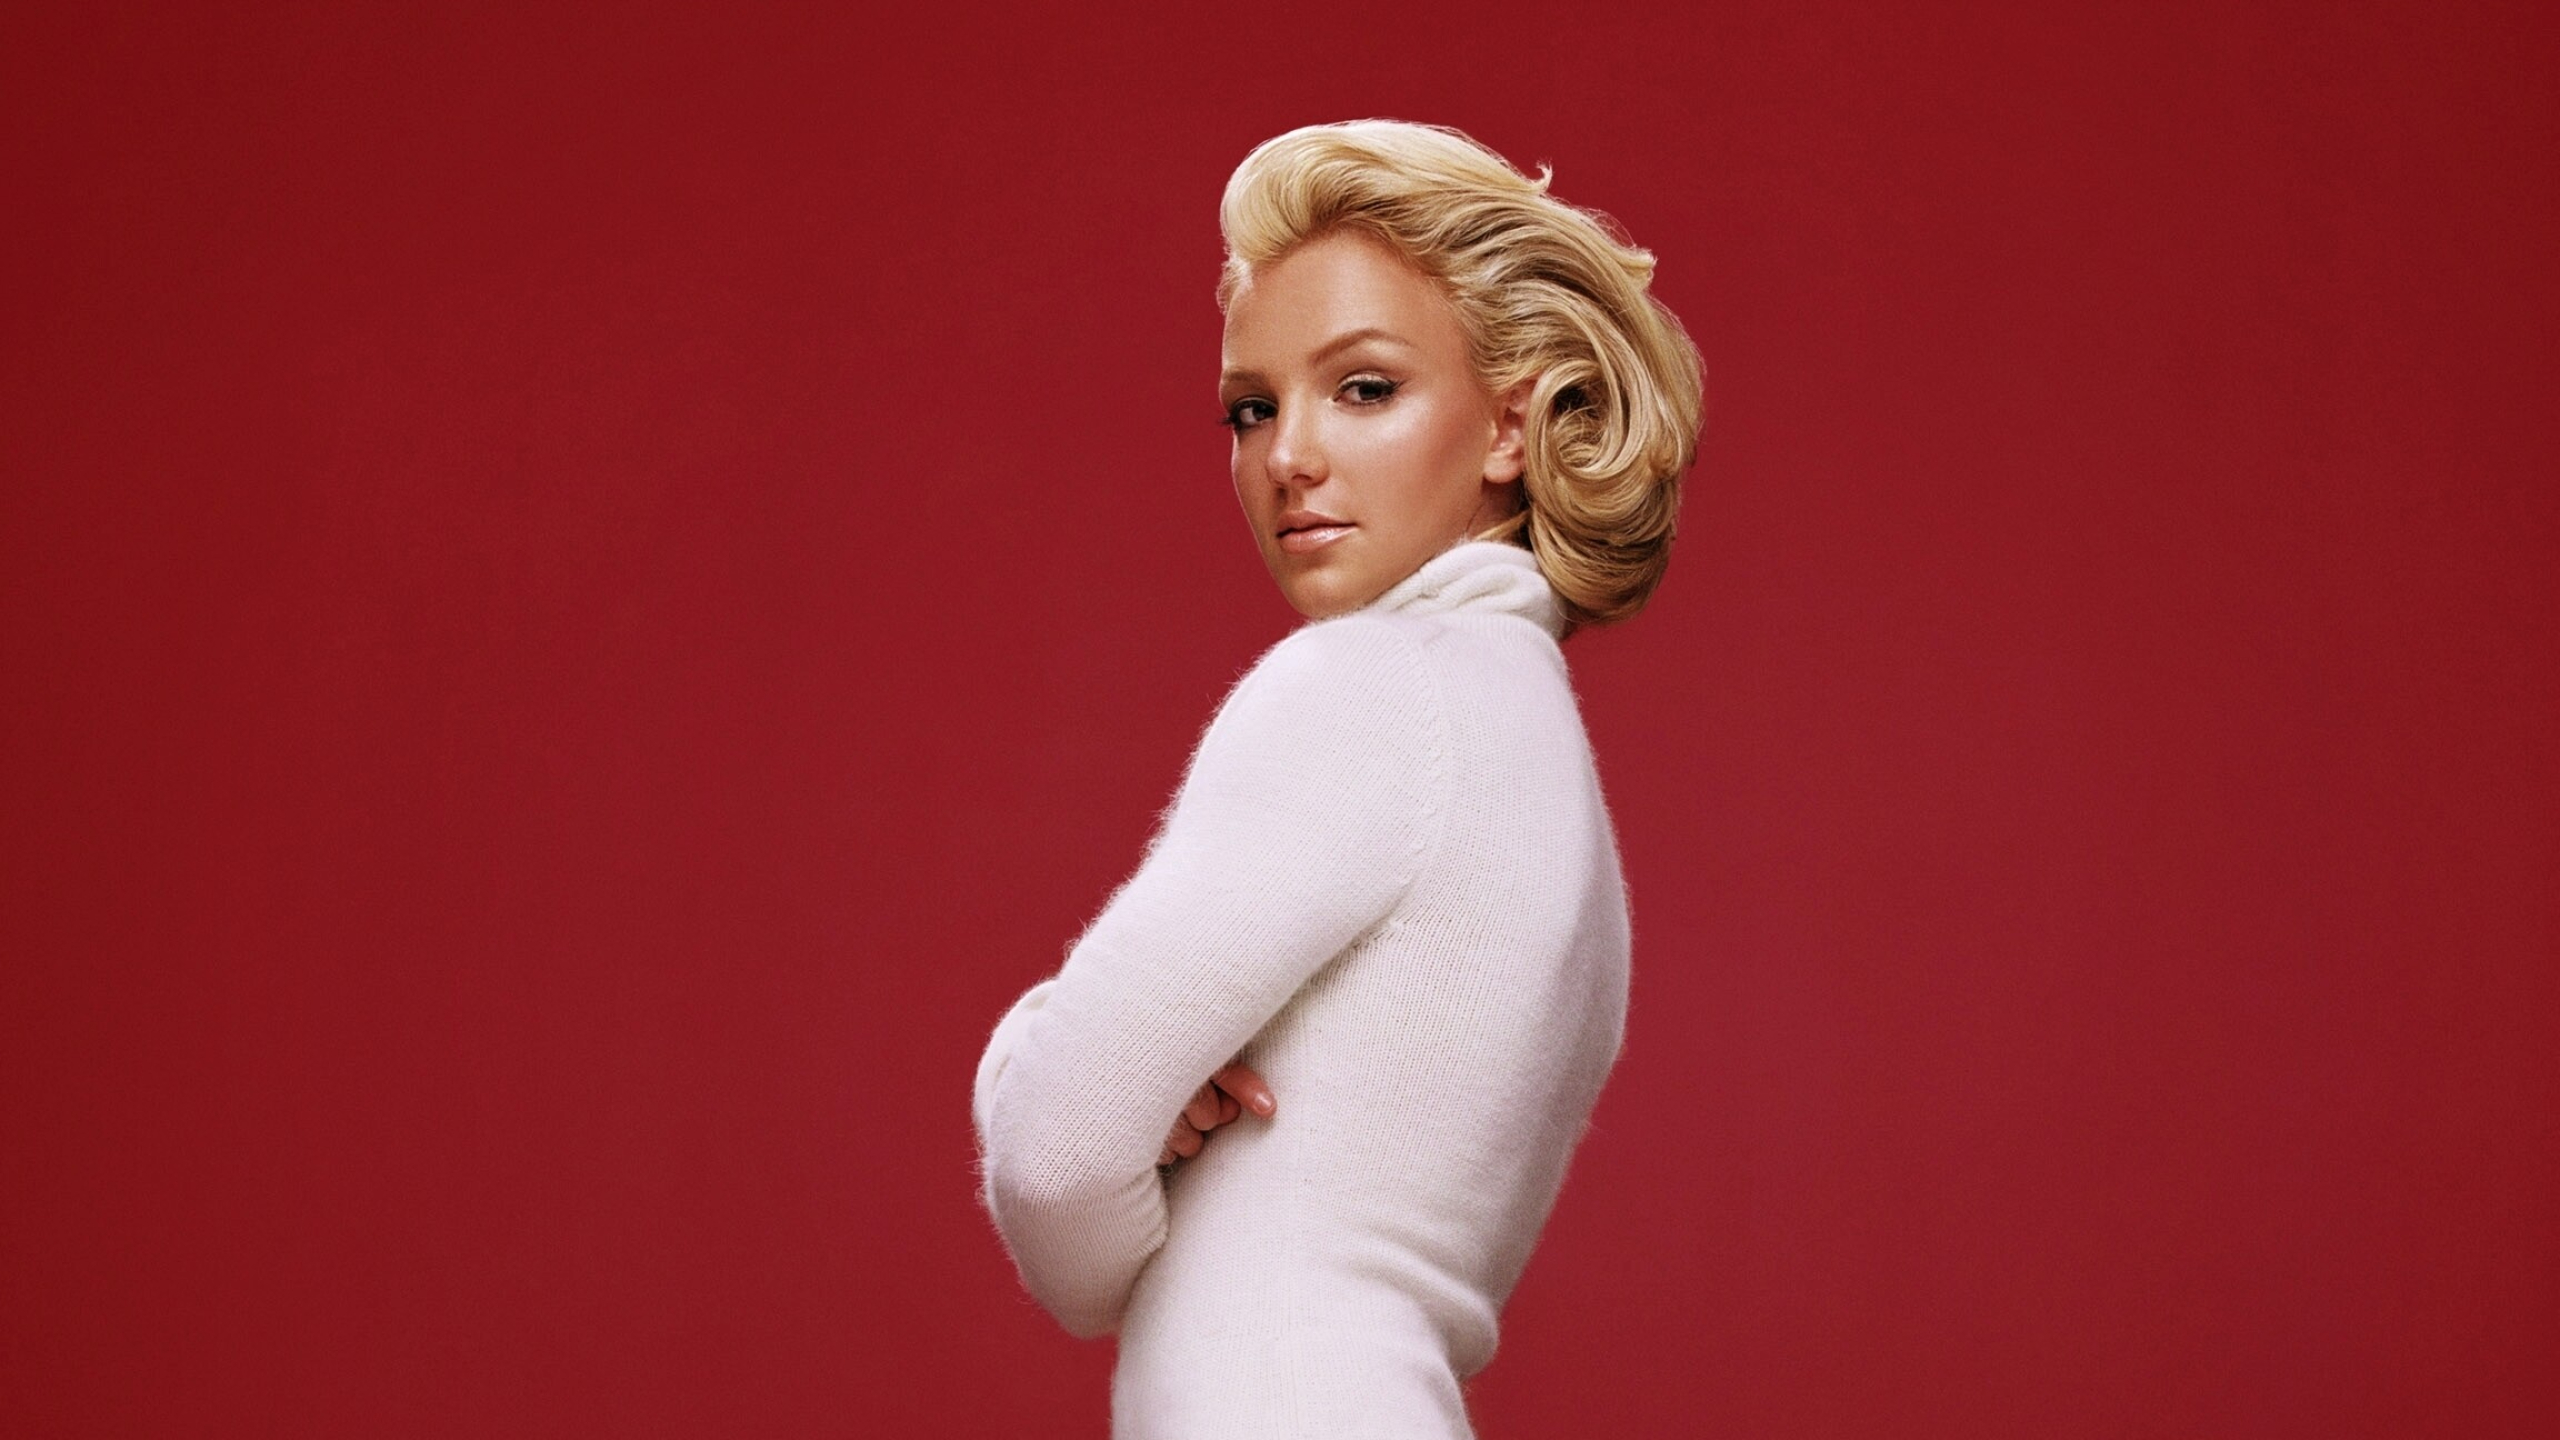 Britney Spears: An American pop singer, Celebrity, Toxic. 2560x1440 HD Wallpaper.